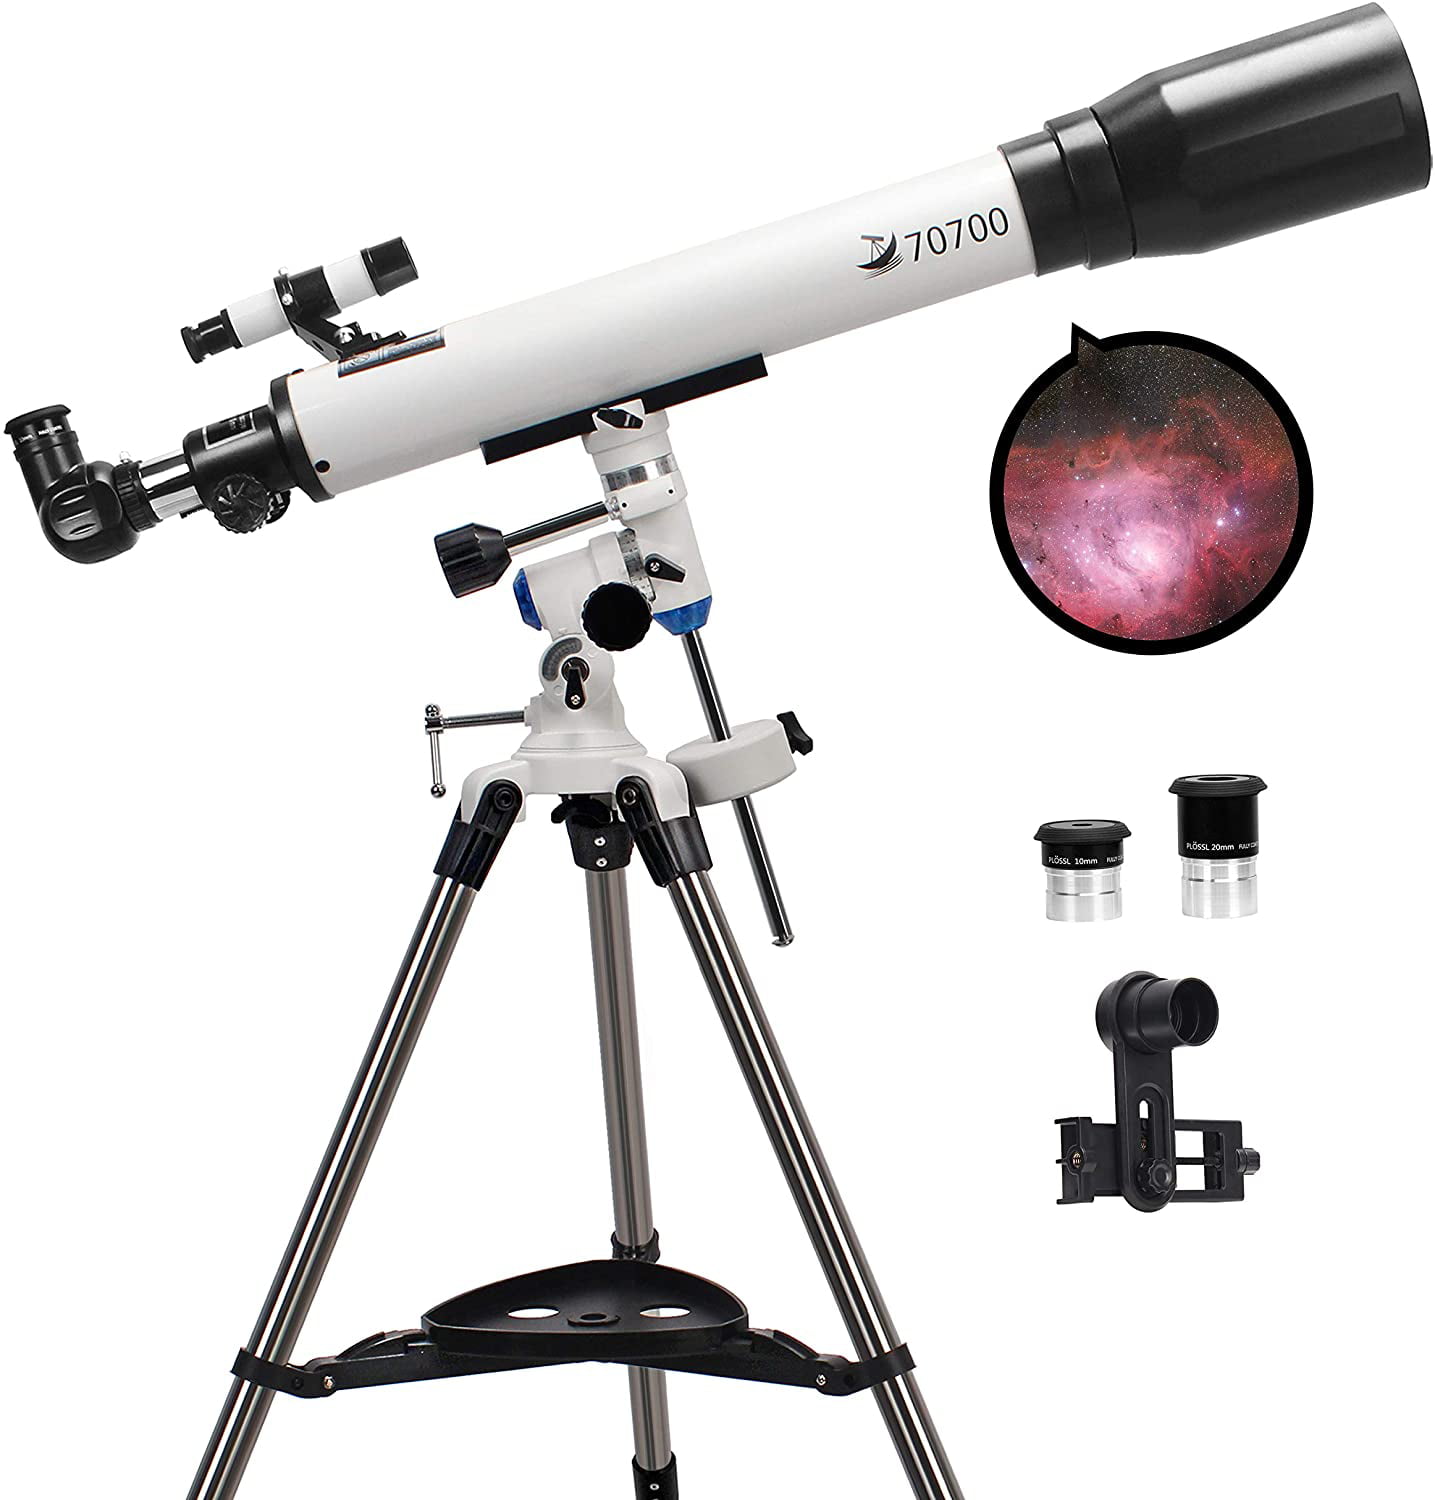 SVBONY SV25 Kids Telescope 60mm Refractor Astronomy Telescopes Beginner Telescope FMC Lens for Kids and Starter to Gaze Moon and Star with Aluminum Tripod 